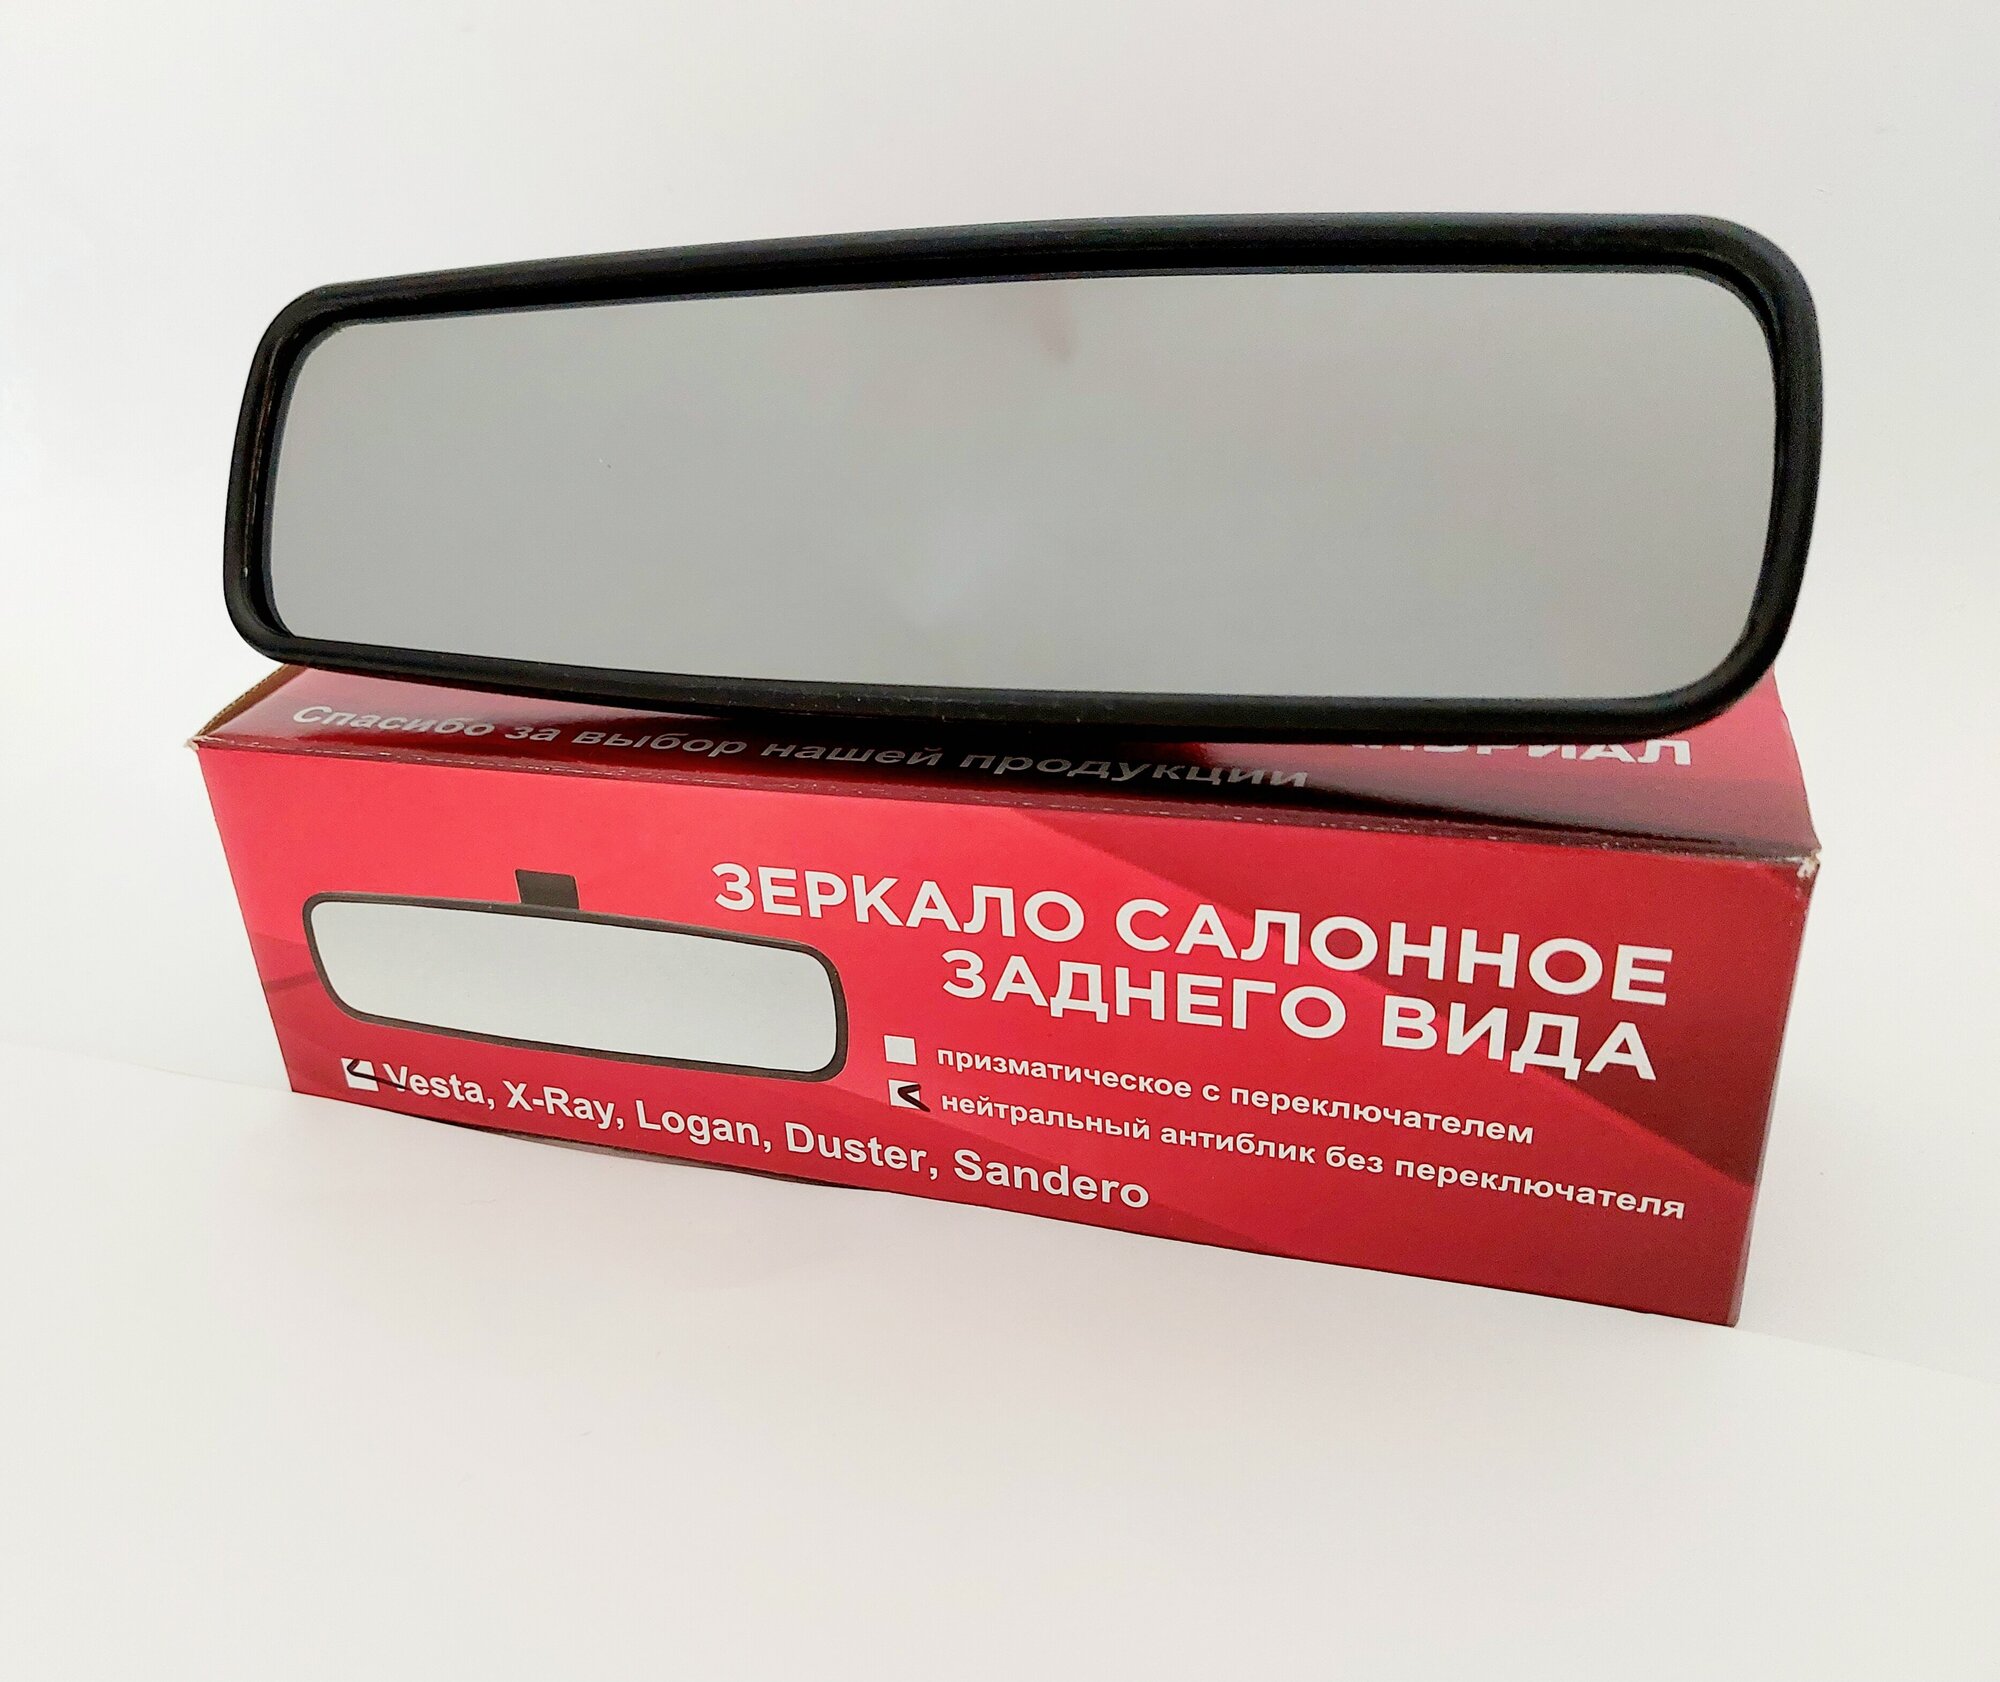 Зеркало салонное заднего вида с нейтральным антибликом без переключателя для LADA Vesta, X-Ray/Renault Logan, Duster, Sandero